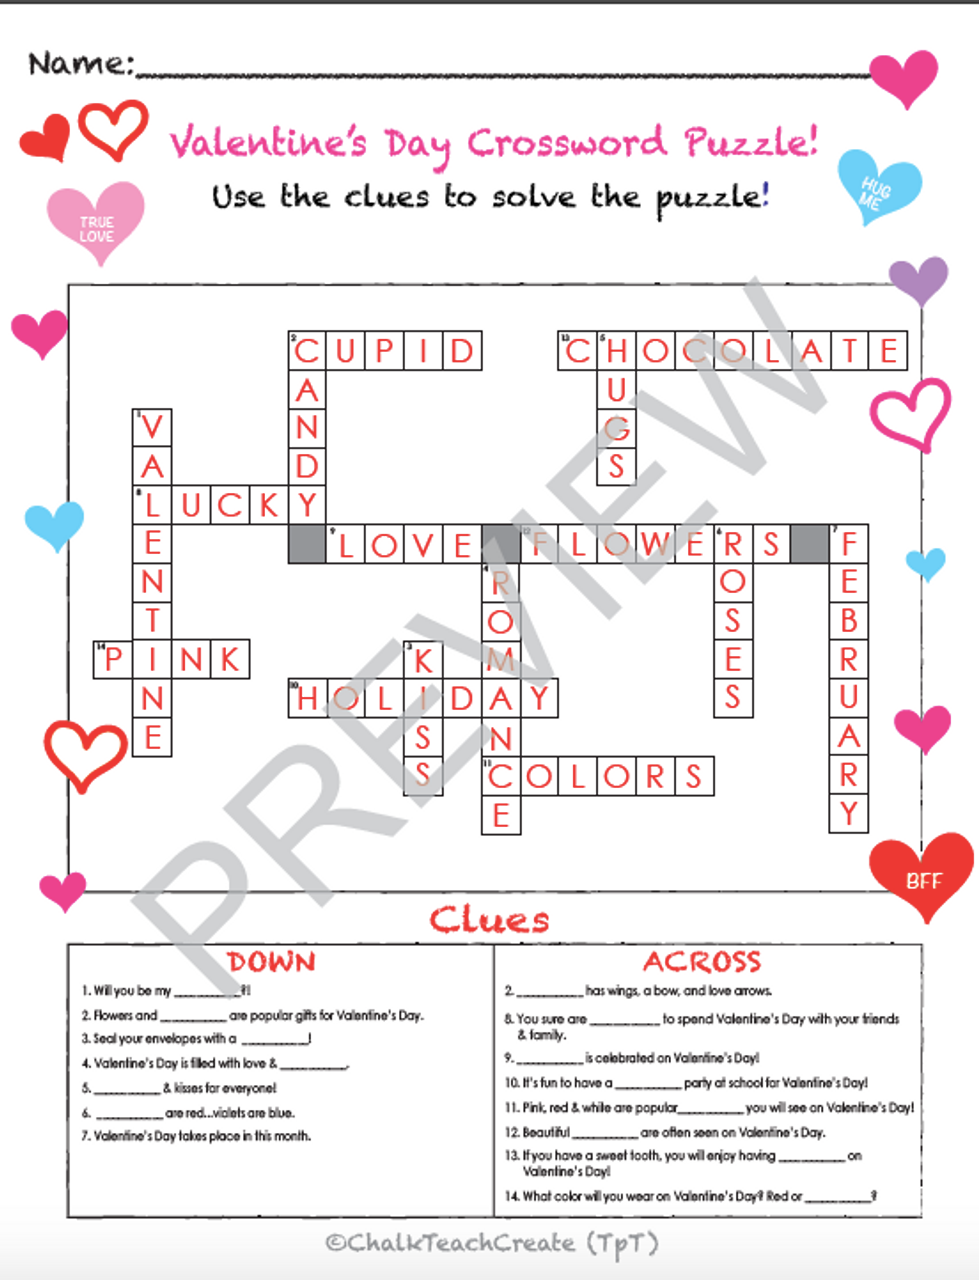 Valentines day crossword puzzle